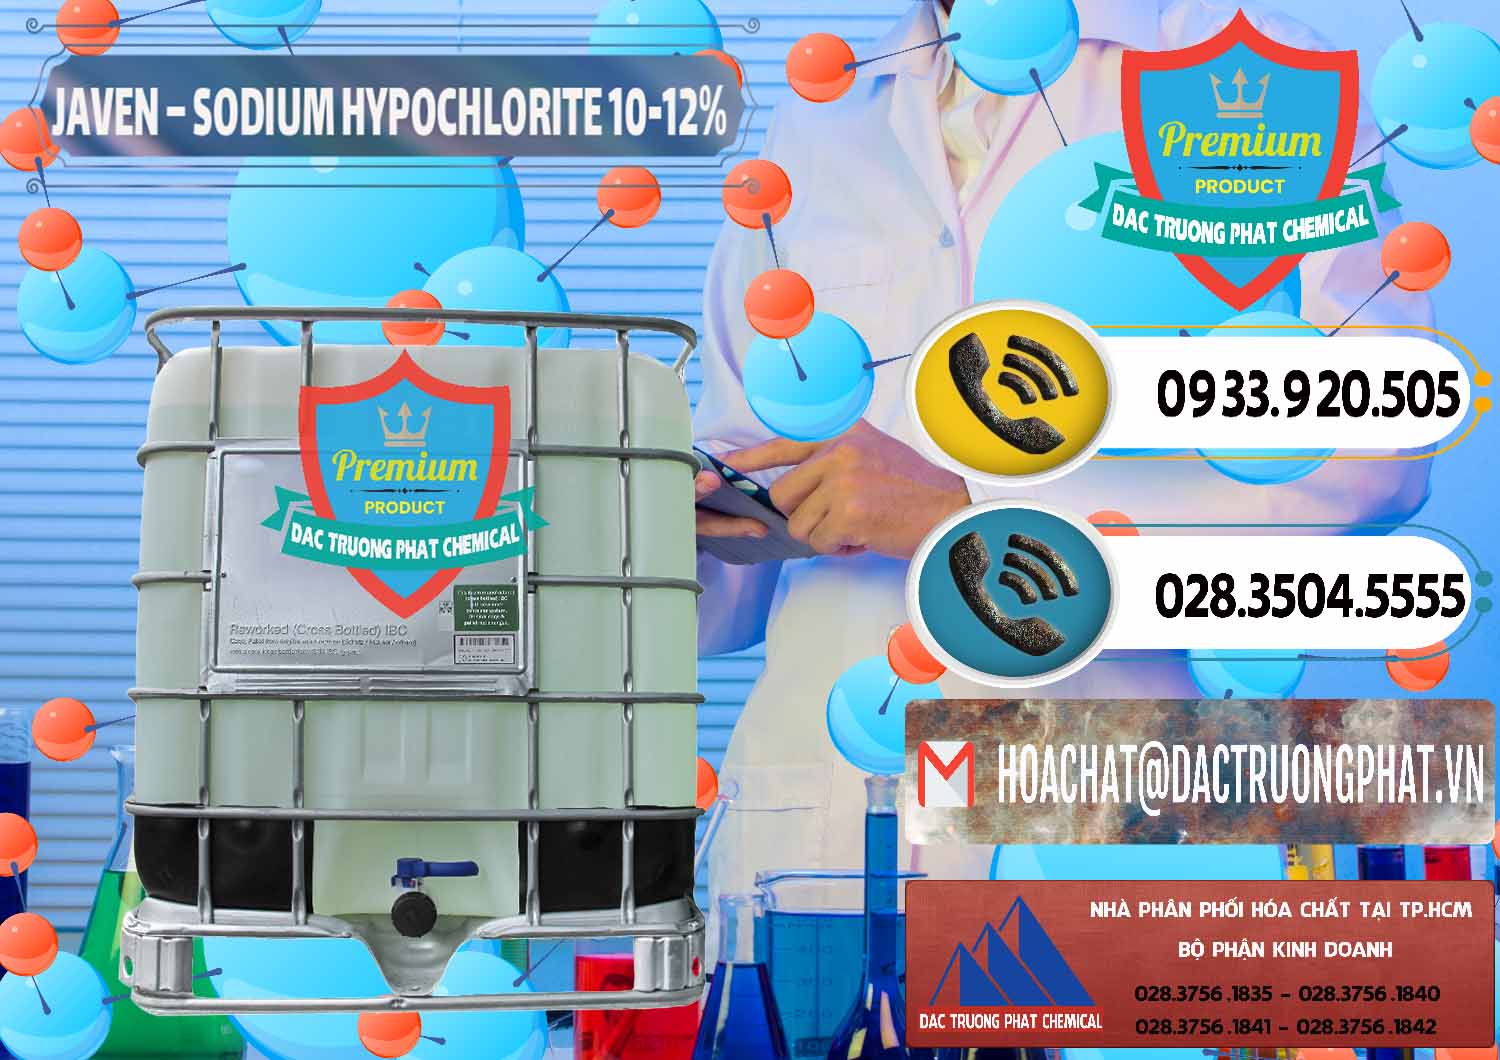 Công ty cung cấp _ phân phối Javen - Sodium Hypochlorite 10-12% Việt Nam - 0188 - Cty bán _ cung ứng hóa chất tại TP.HCM - hoachatdetnhuom.vn